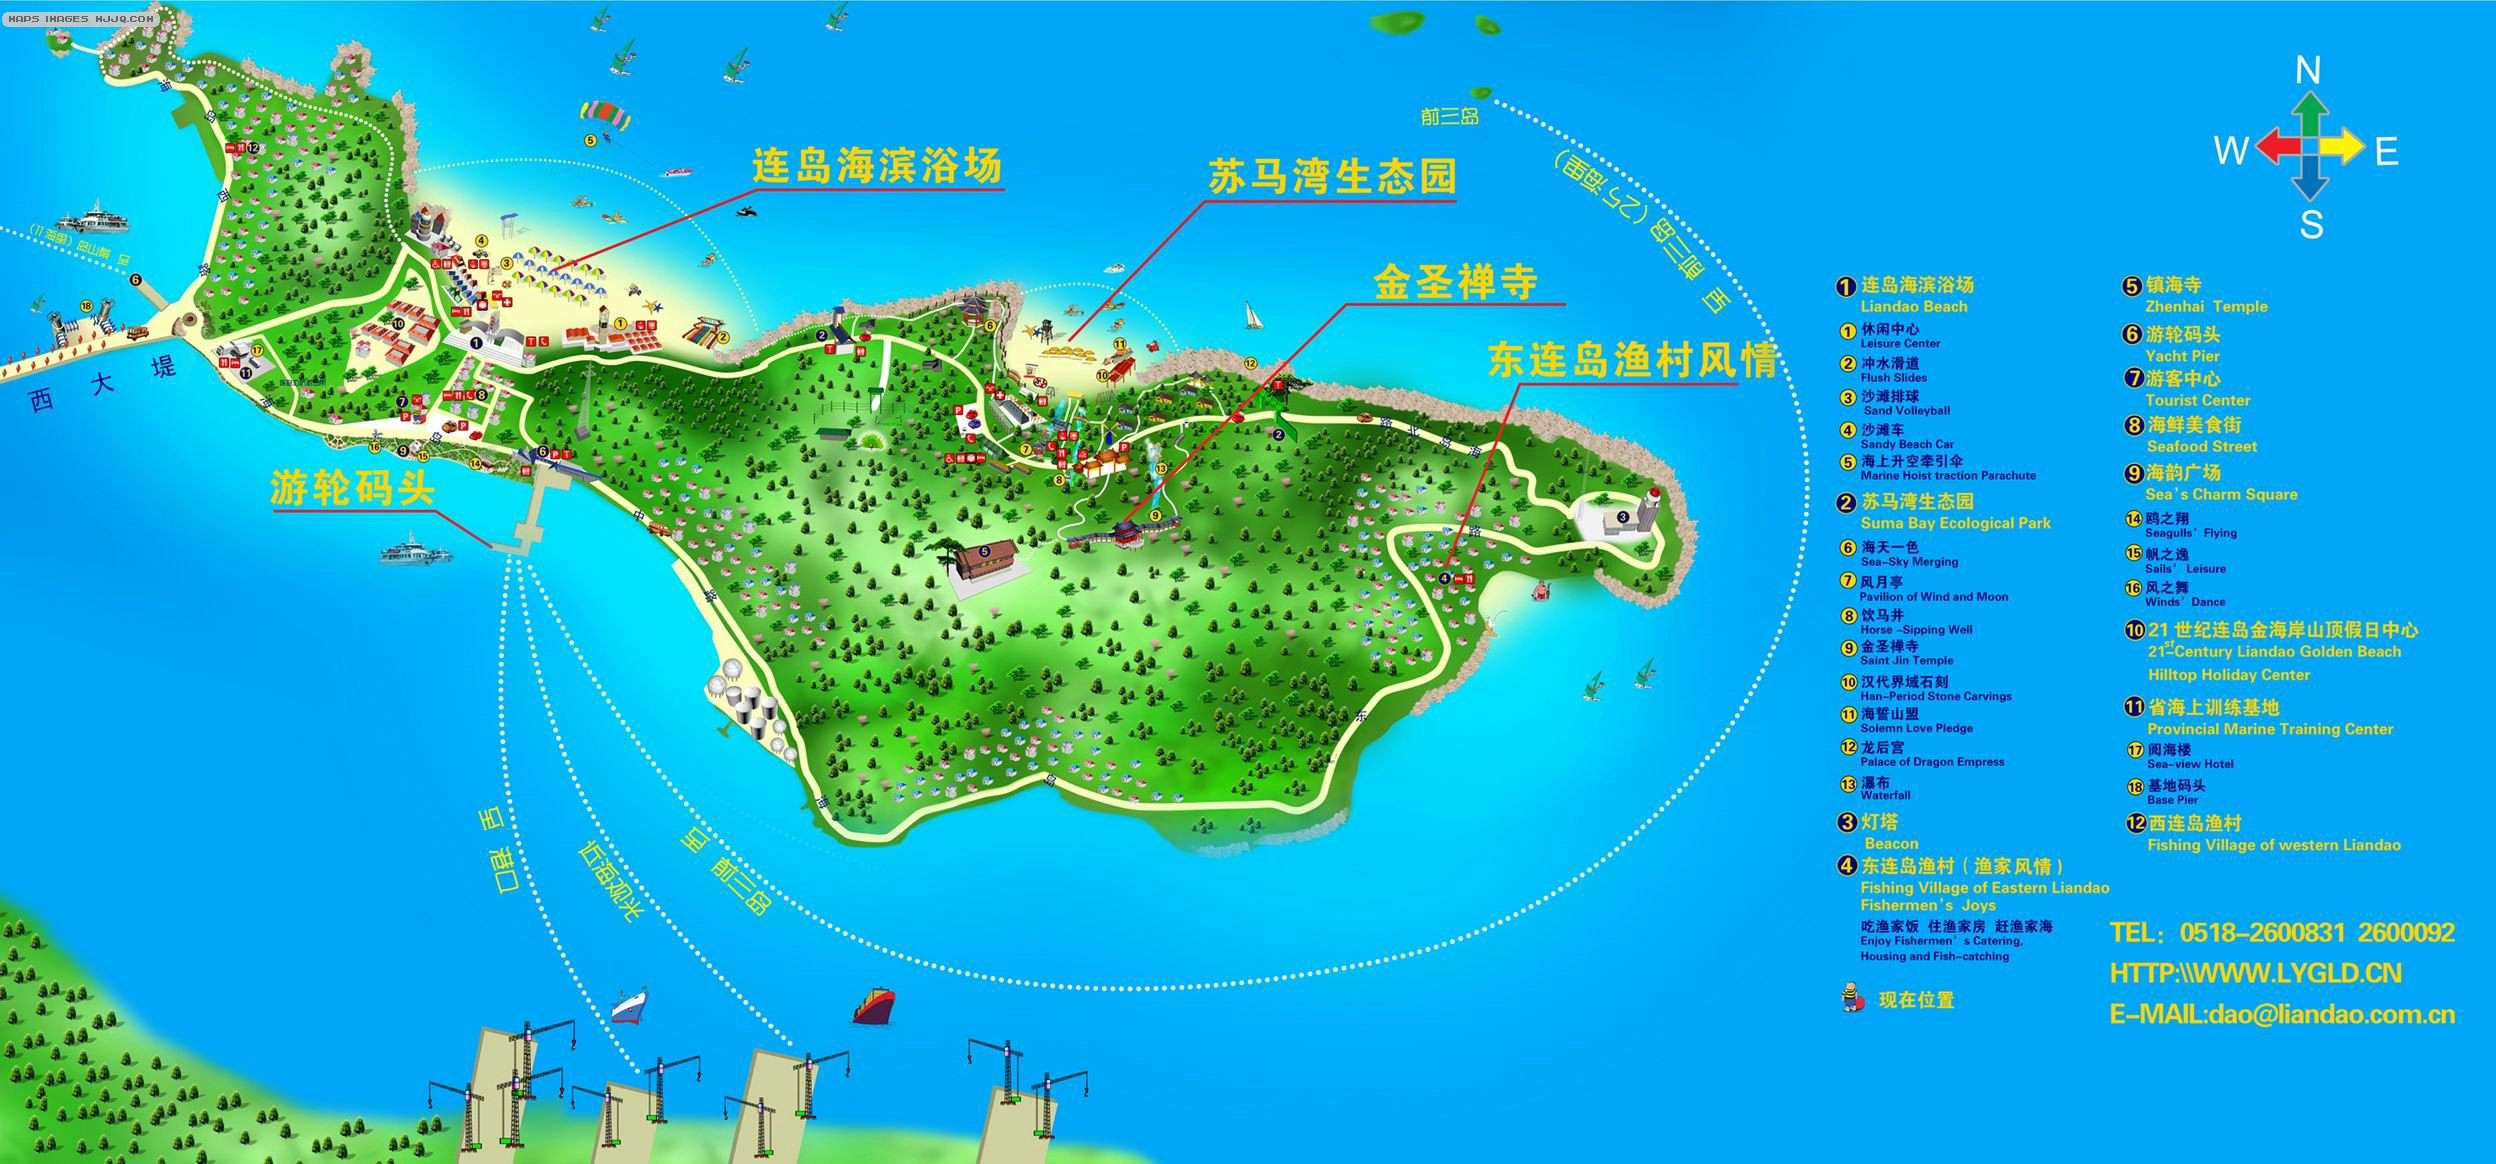 连岛旅游地图 - 江苏地图 Jiangsu Map - 美景旅游网